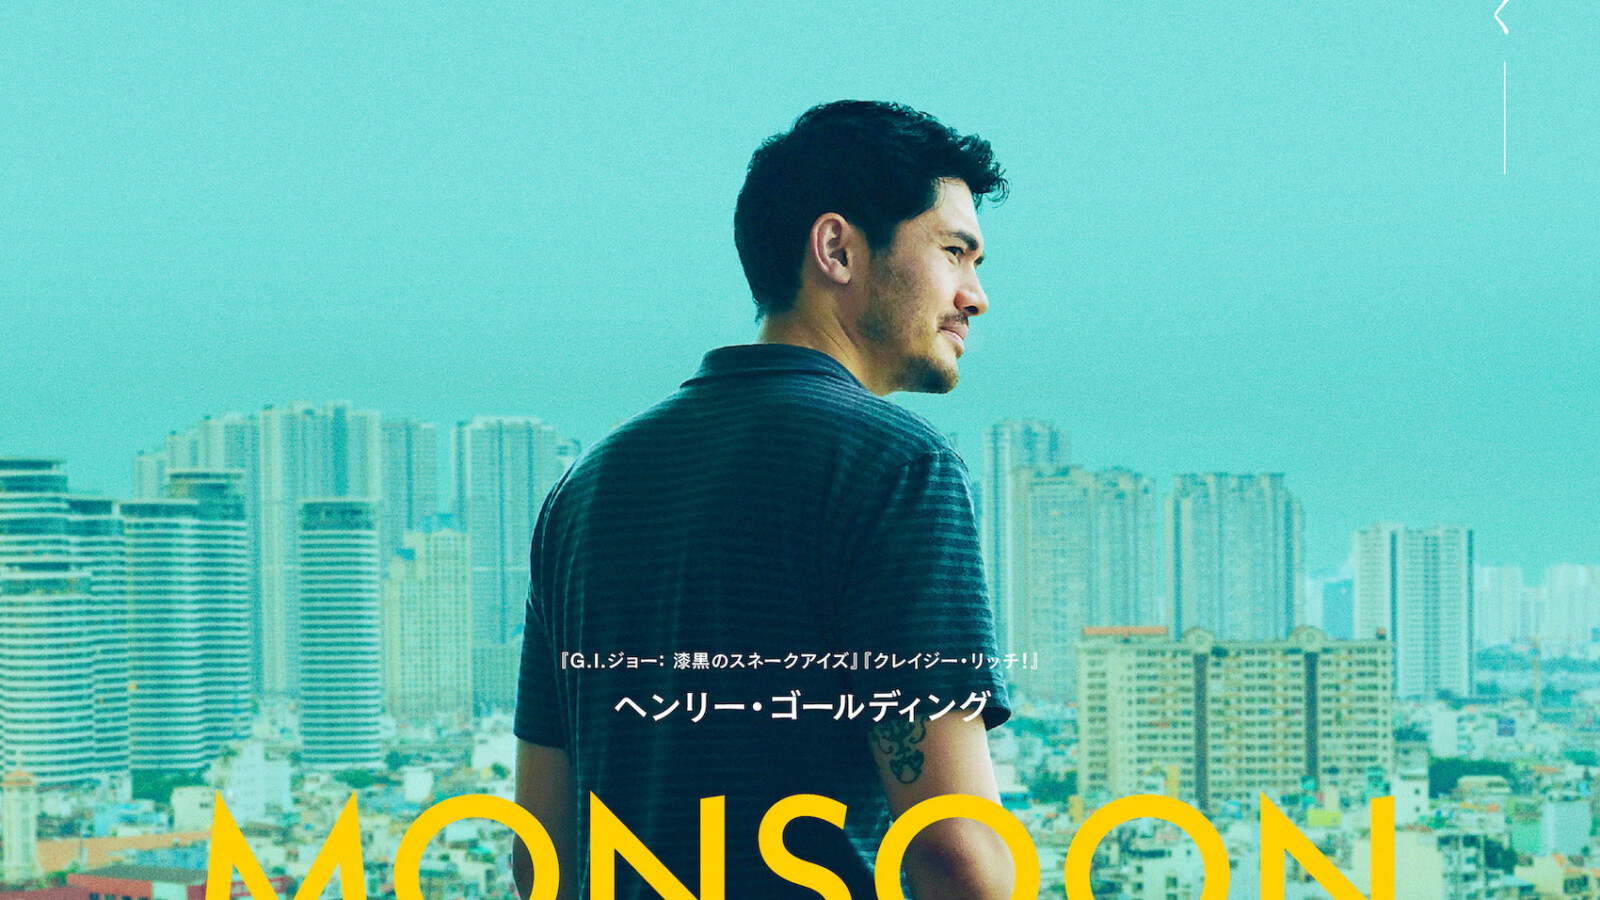 ヘンリー ゴールディング主演 Monsoon モンスーン 22年1月14日公開決定 日本版ポスターが解禁 Fan S Voice ファンズボイス